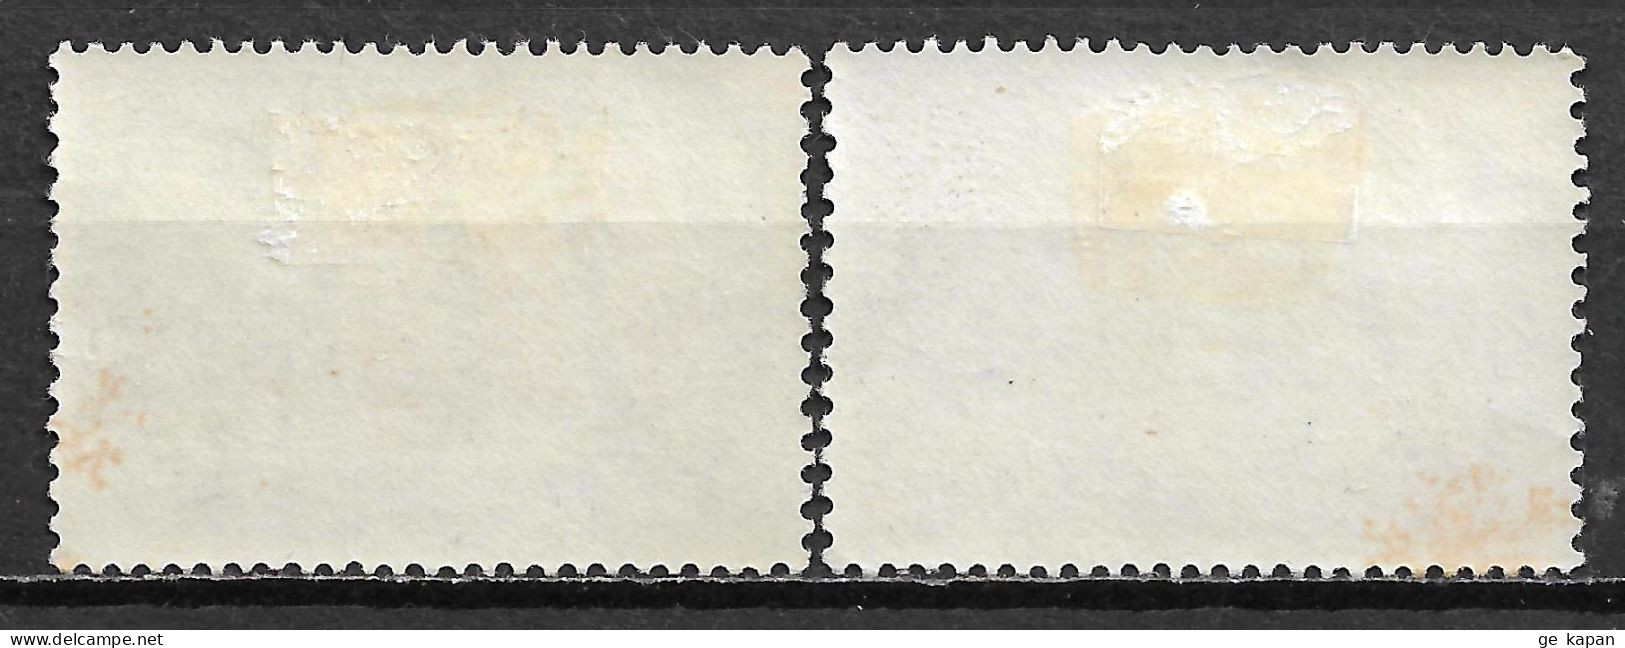 1963 NETHERLANDS Complete Set Of 2 MVLH STAMPS (Michel # 791,792) CV €1.50 - Ongebruikt